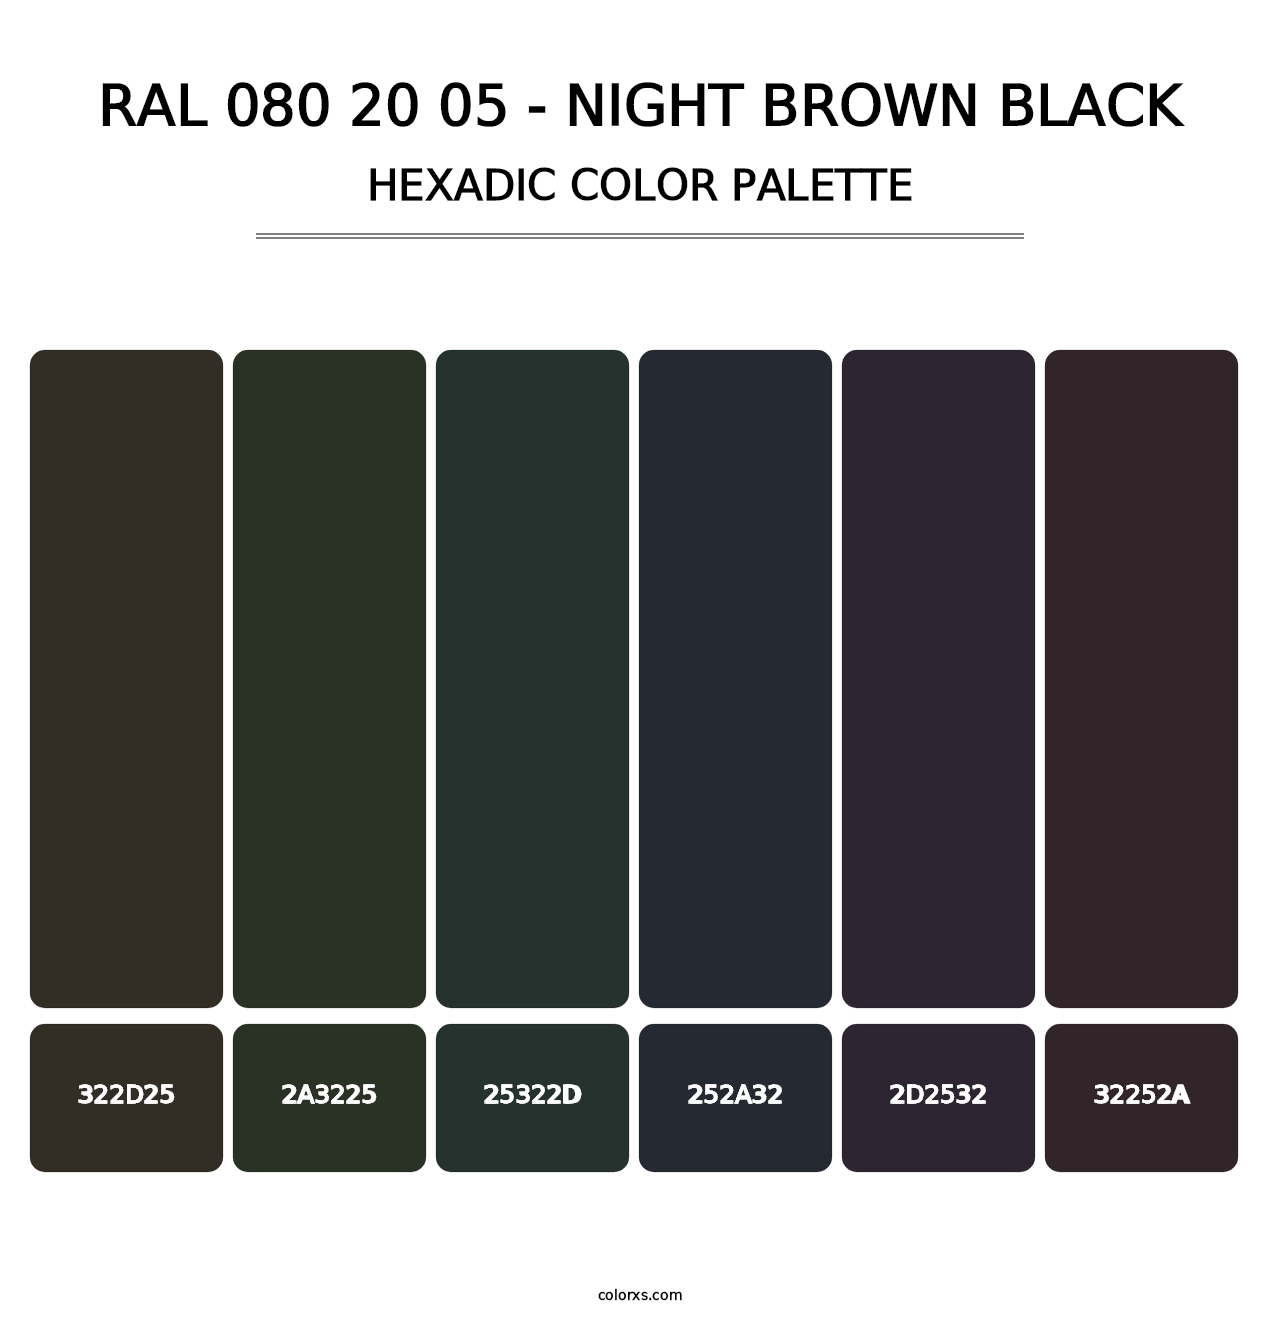 RAL 080 20 05 - Night Brown Black - Hexadic Color Palette